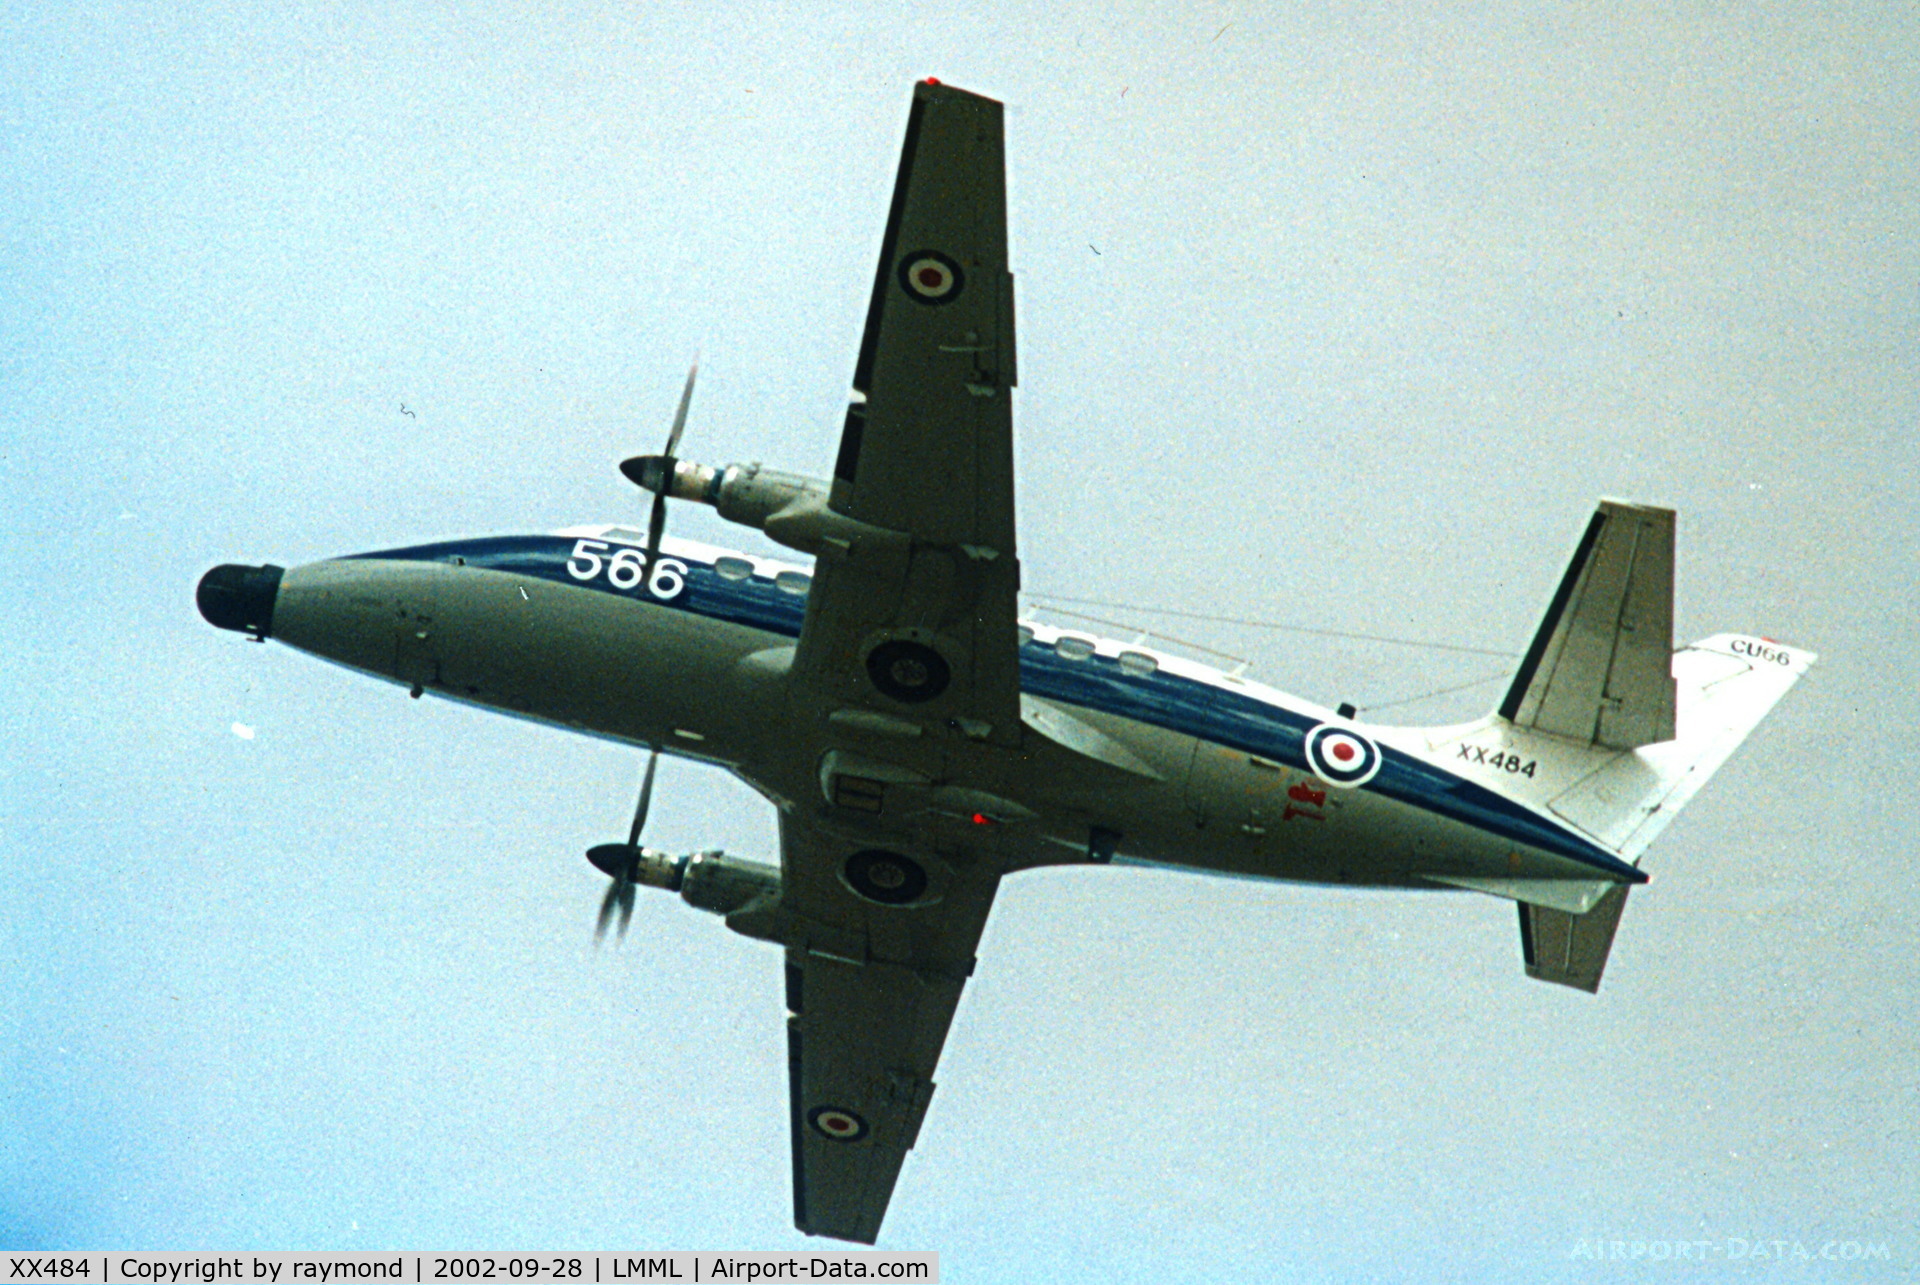 XX484, Scottish Aviation HP-137 Jetstream T.2 C/N 266, Jetstream XX484/566 NAS750 Royal Navy